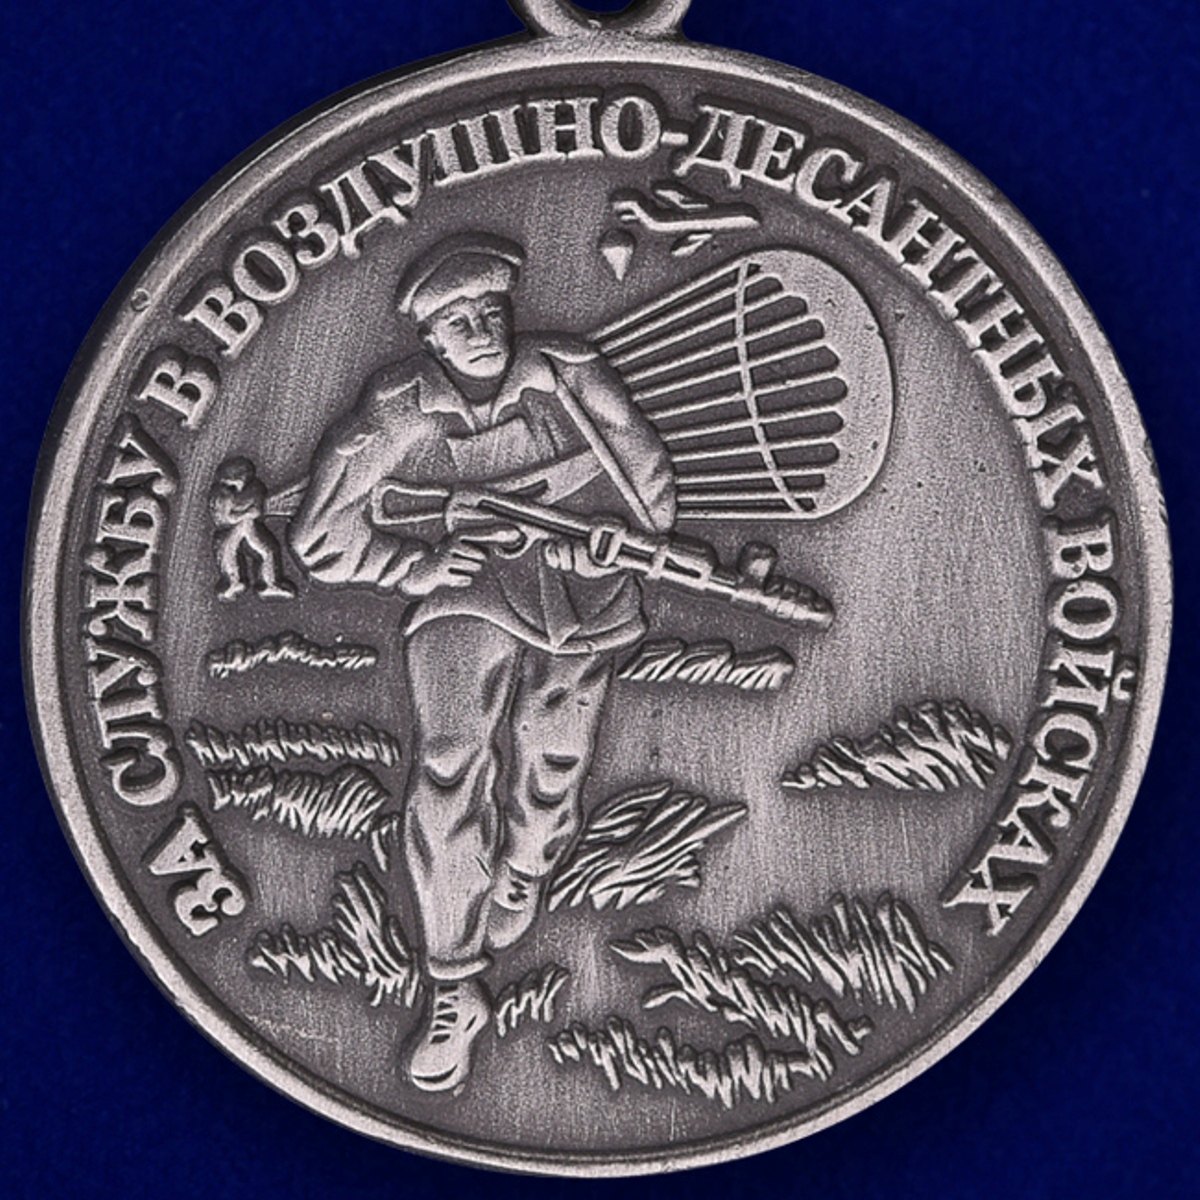 Медаль "За службу в Воздушно-десантных войсках" 